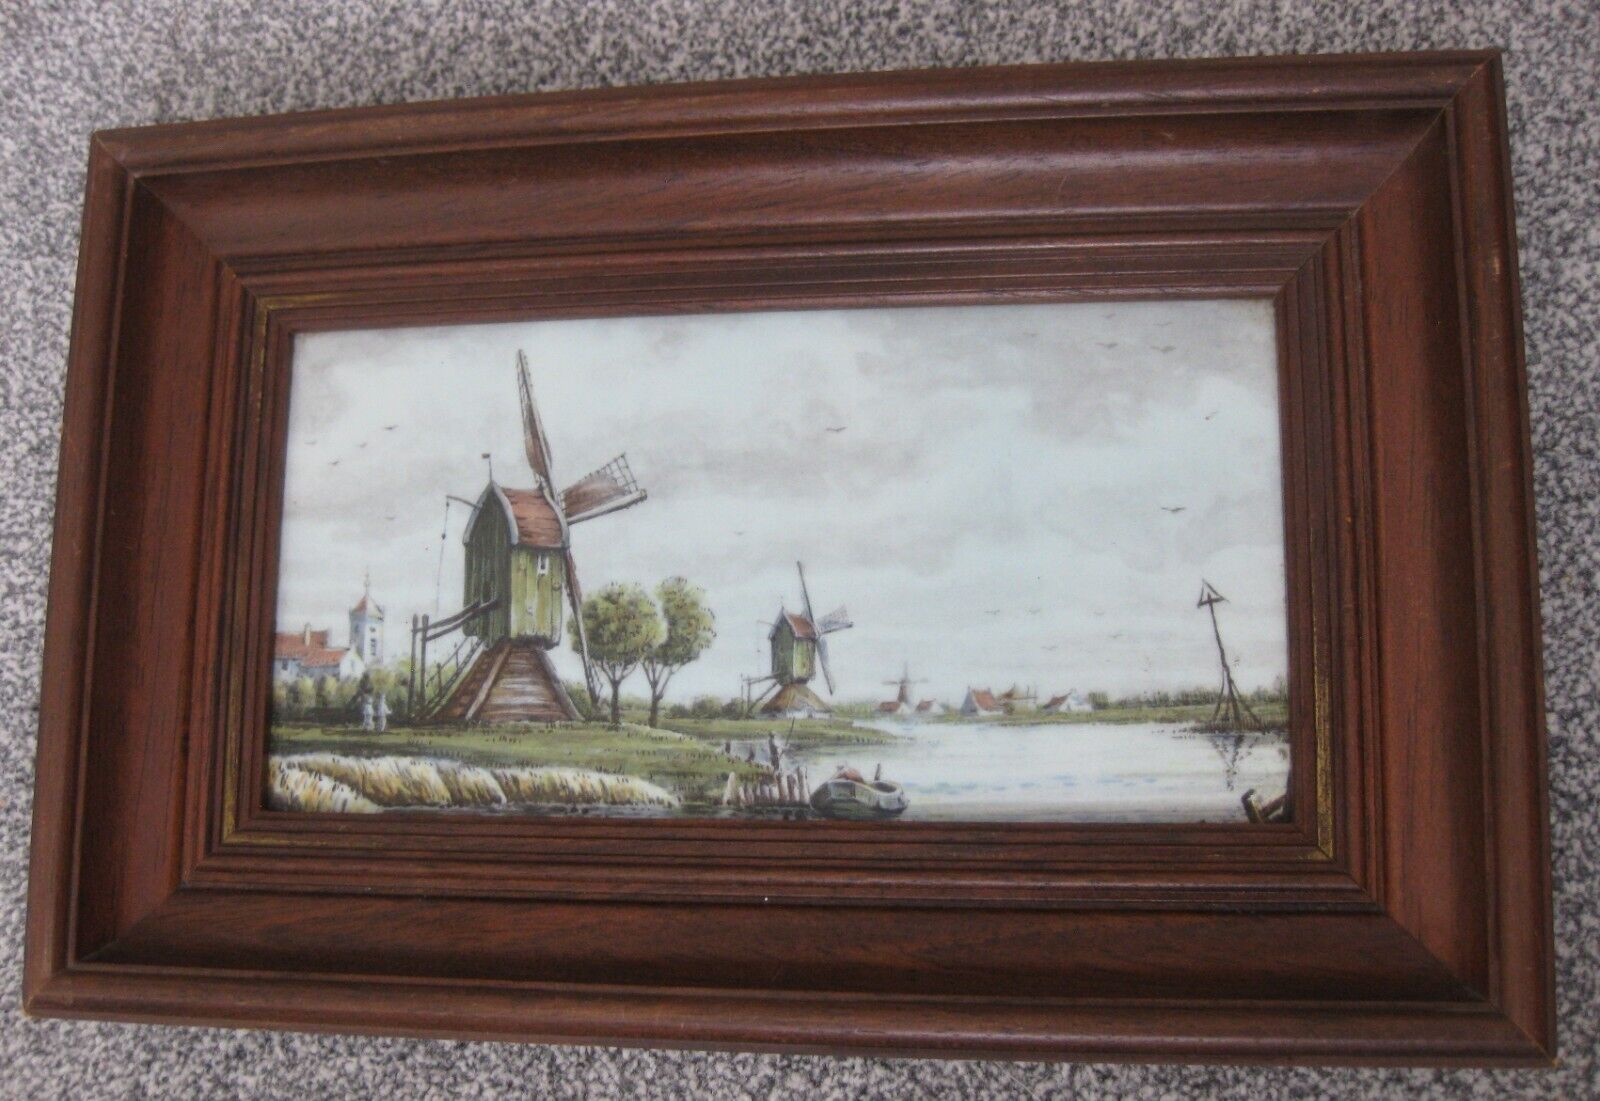 Vintage Ceramic tile Delfts Delftware in Wooden frame Dutch scene Windmills